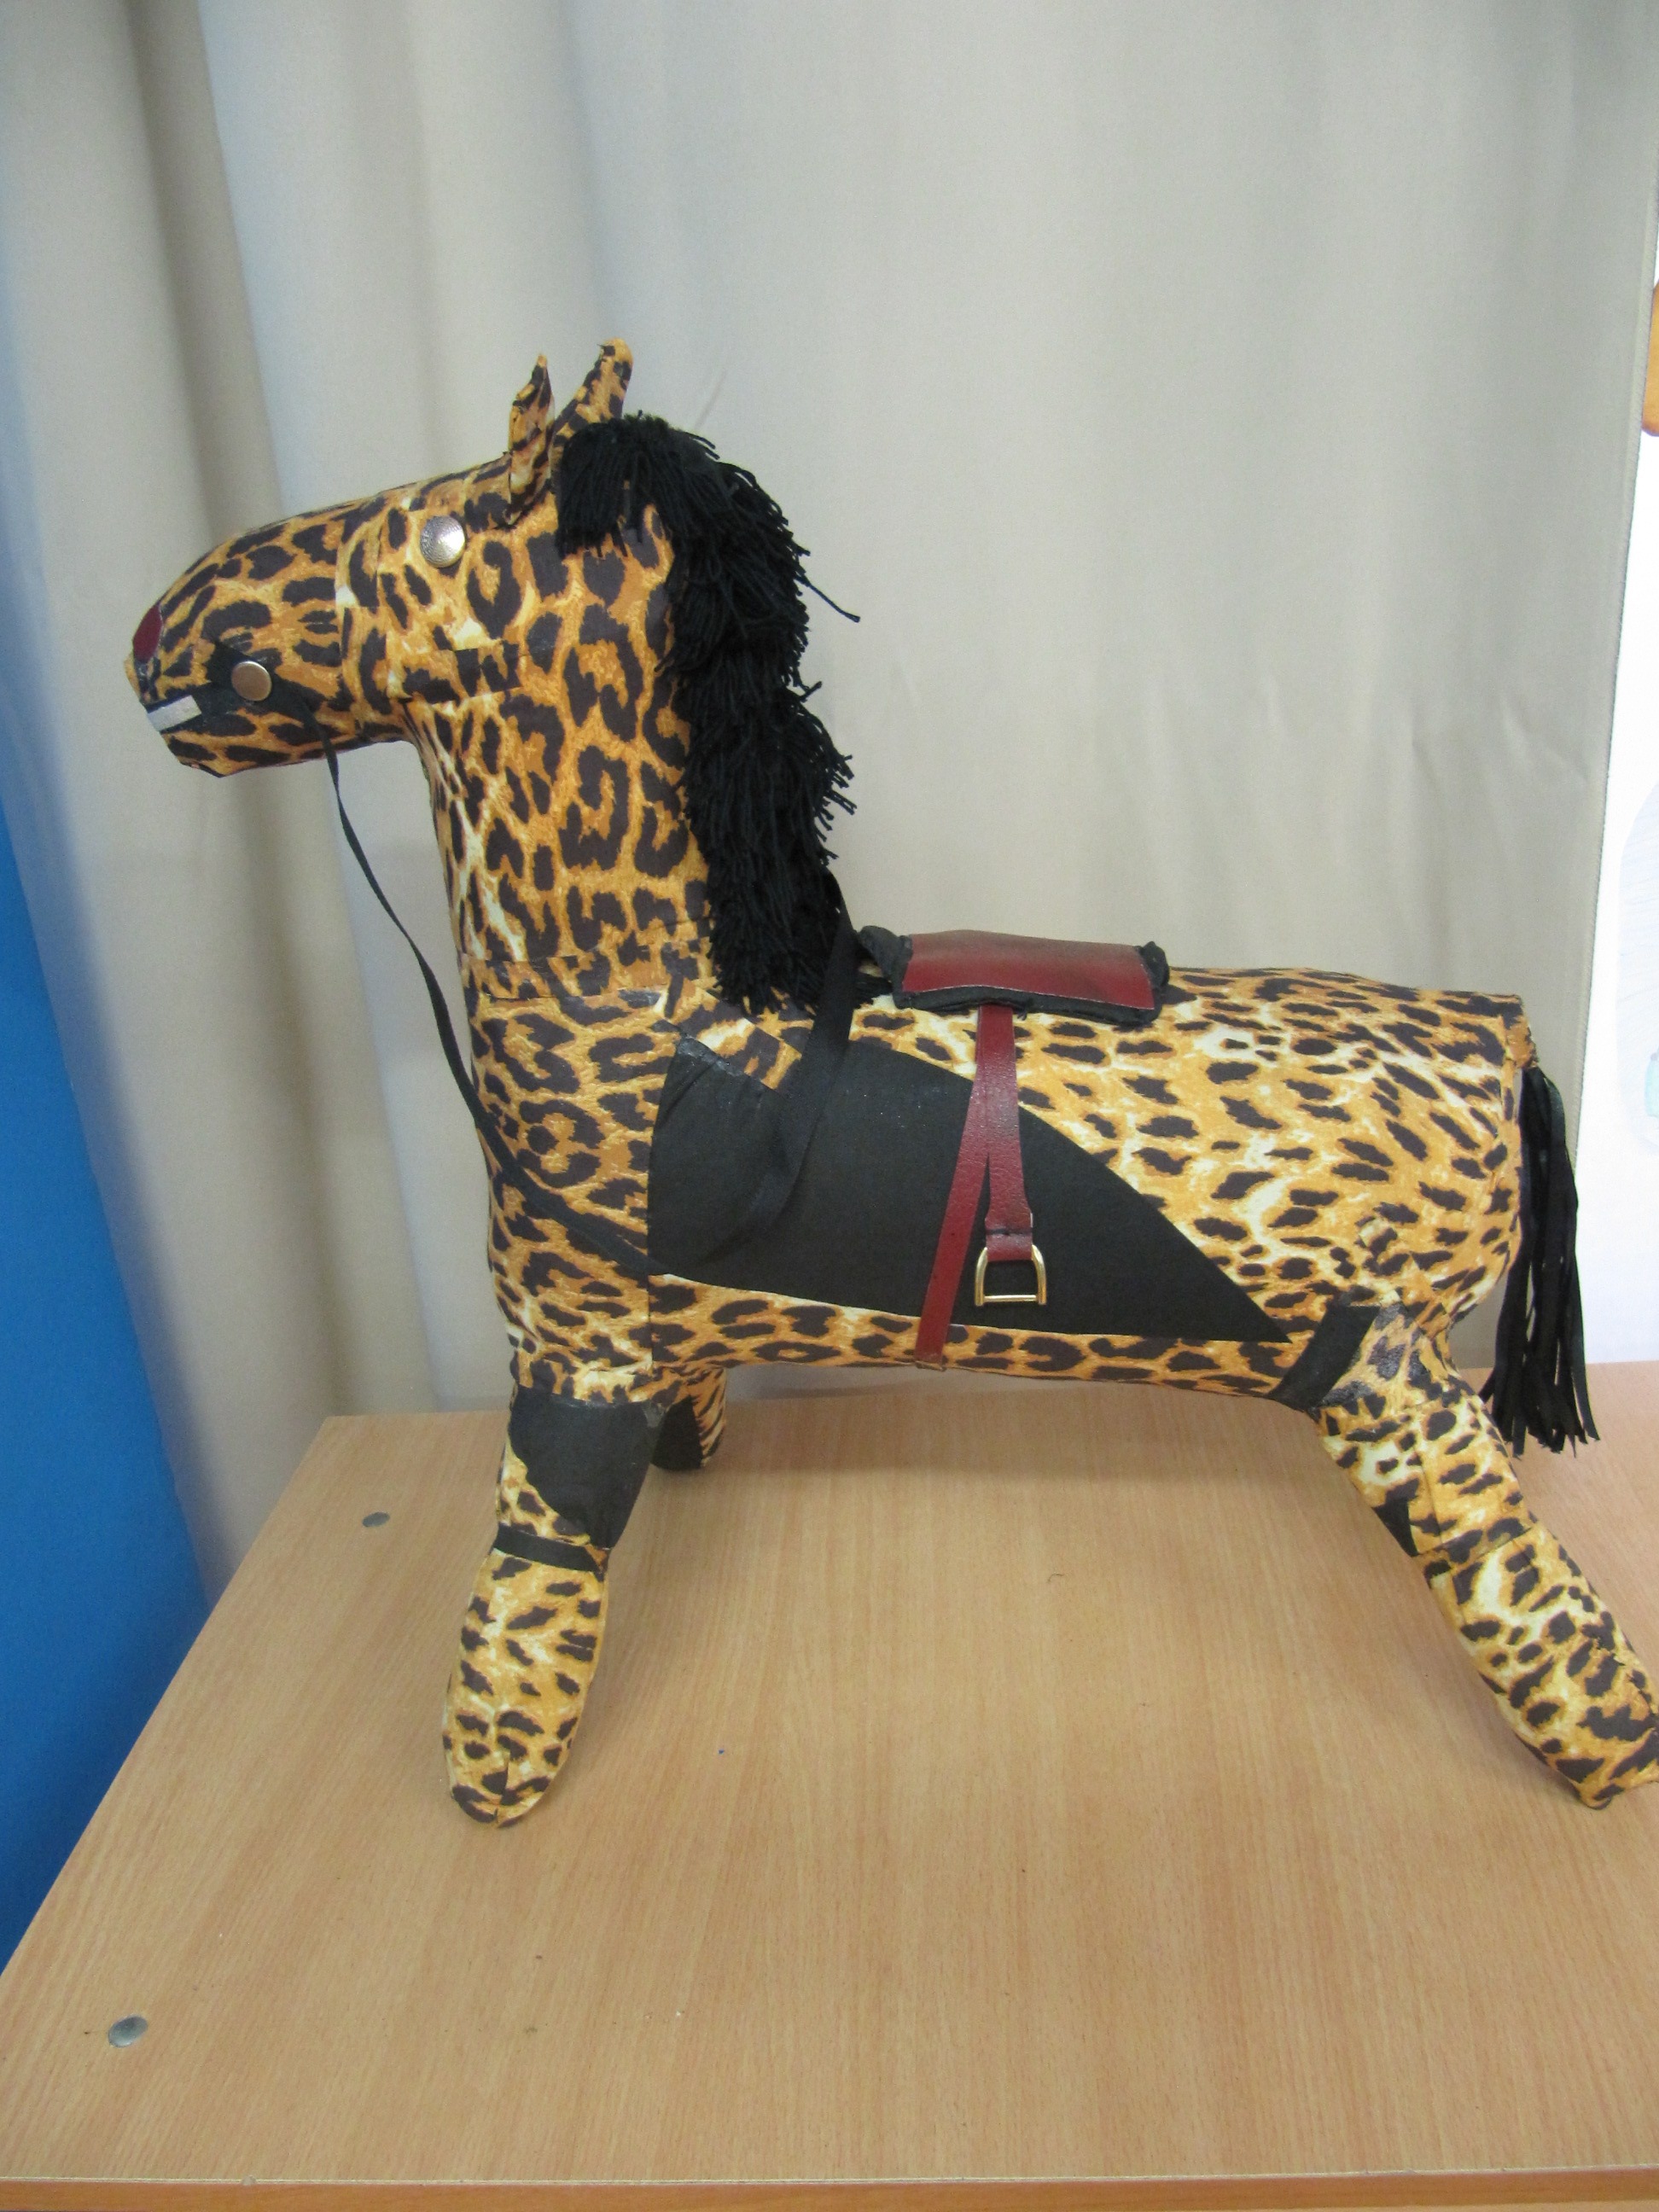 Лошадь с леопардовым окрасом и робот-часы. Екатеринбург выбрал мусорные шедевры - Фото 4